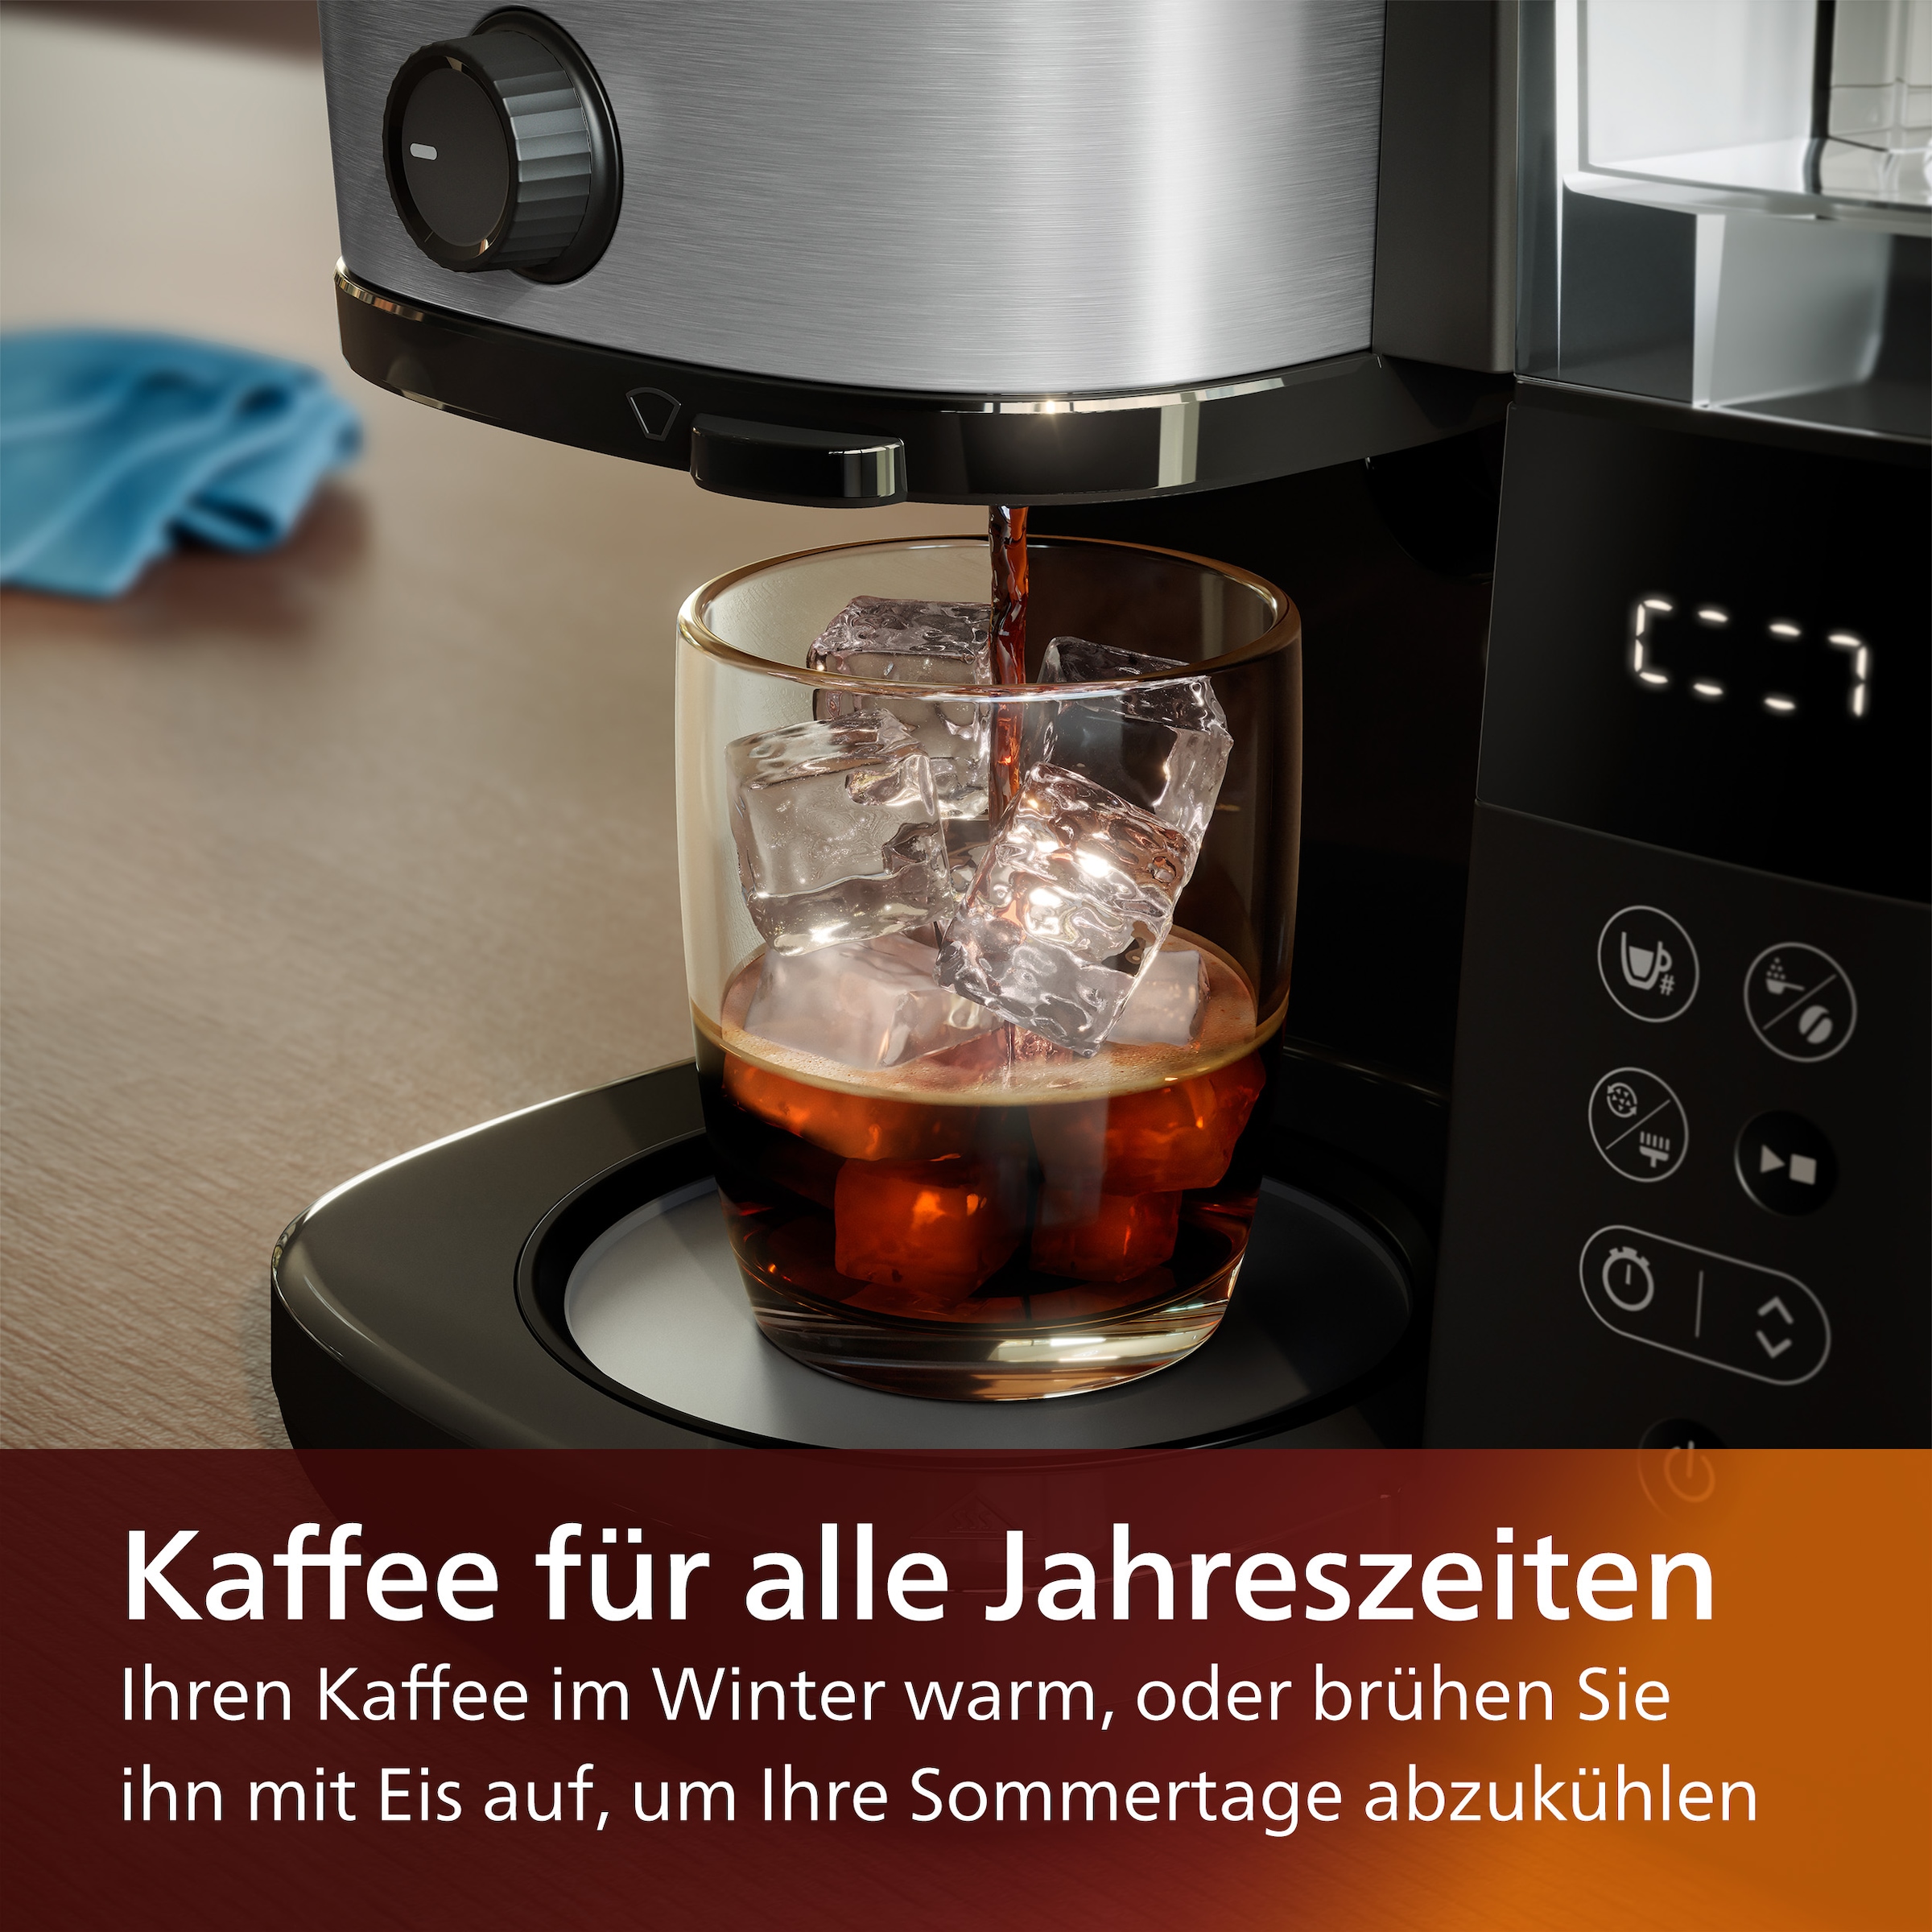 1x4, Dosierlöffel OTTO mit »HD7900/50 All-in-1 kaufen Brew«, Kaffeemaschine mit Permanentfilter, Mahlwerk und Smart bei Philips Dosierung inkl. Duo-Kaffeebohnenbehälter,